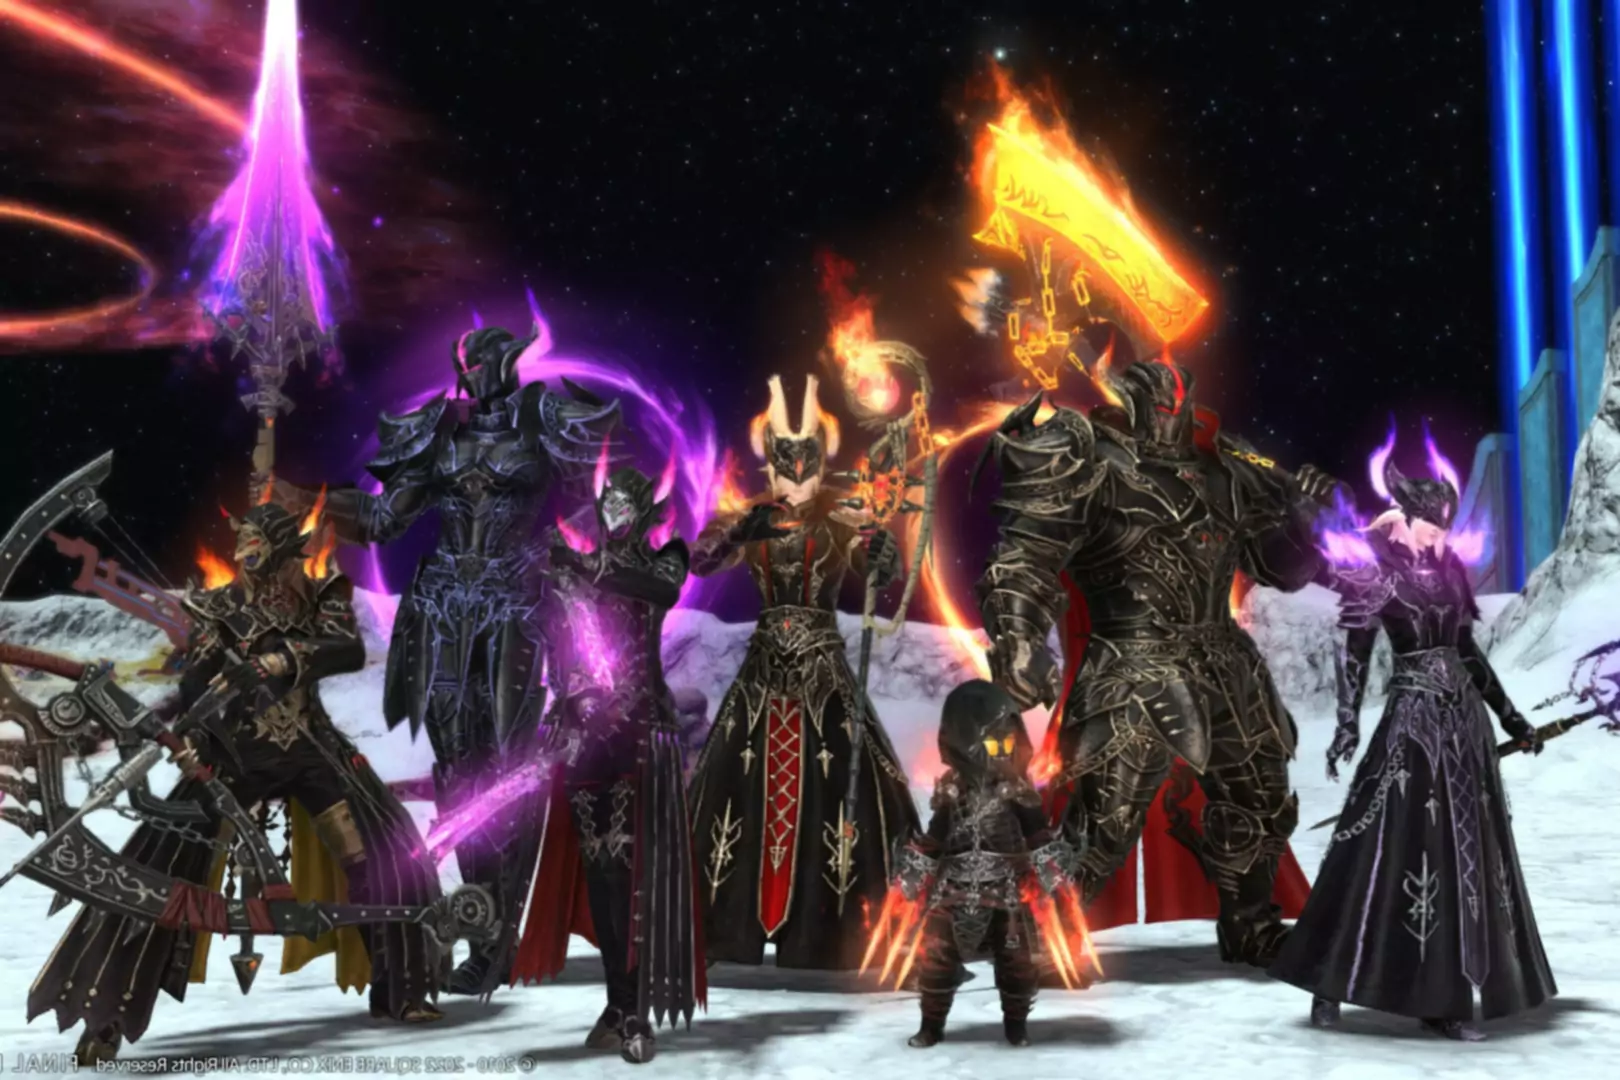 Schermata di Final Fantasy XIV Endwalker con personaggi in piedi con armi e armature elaborate